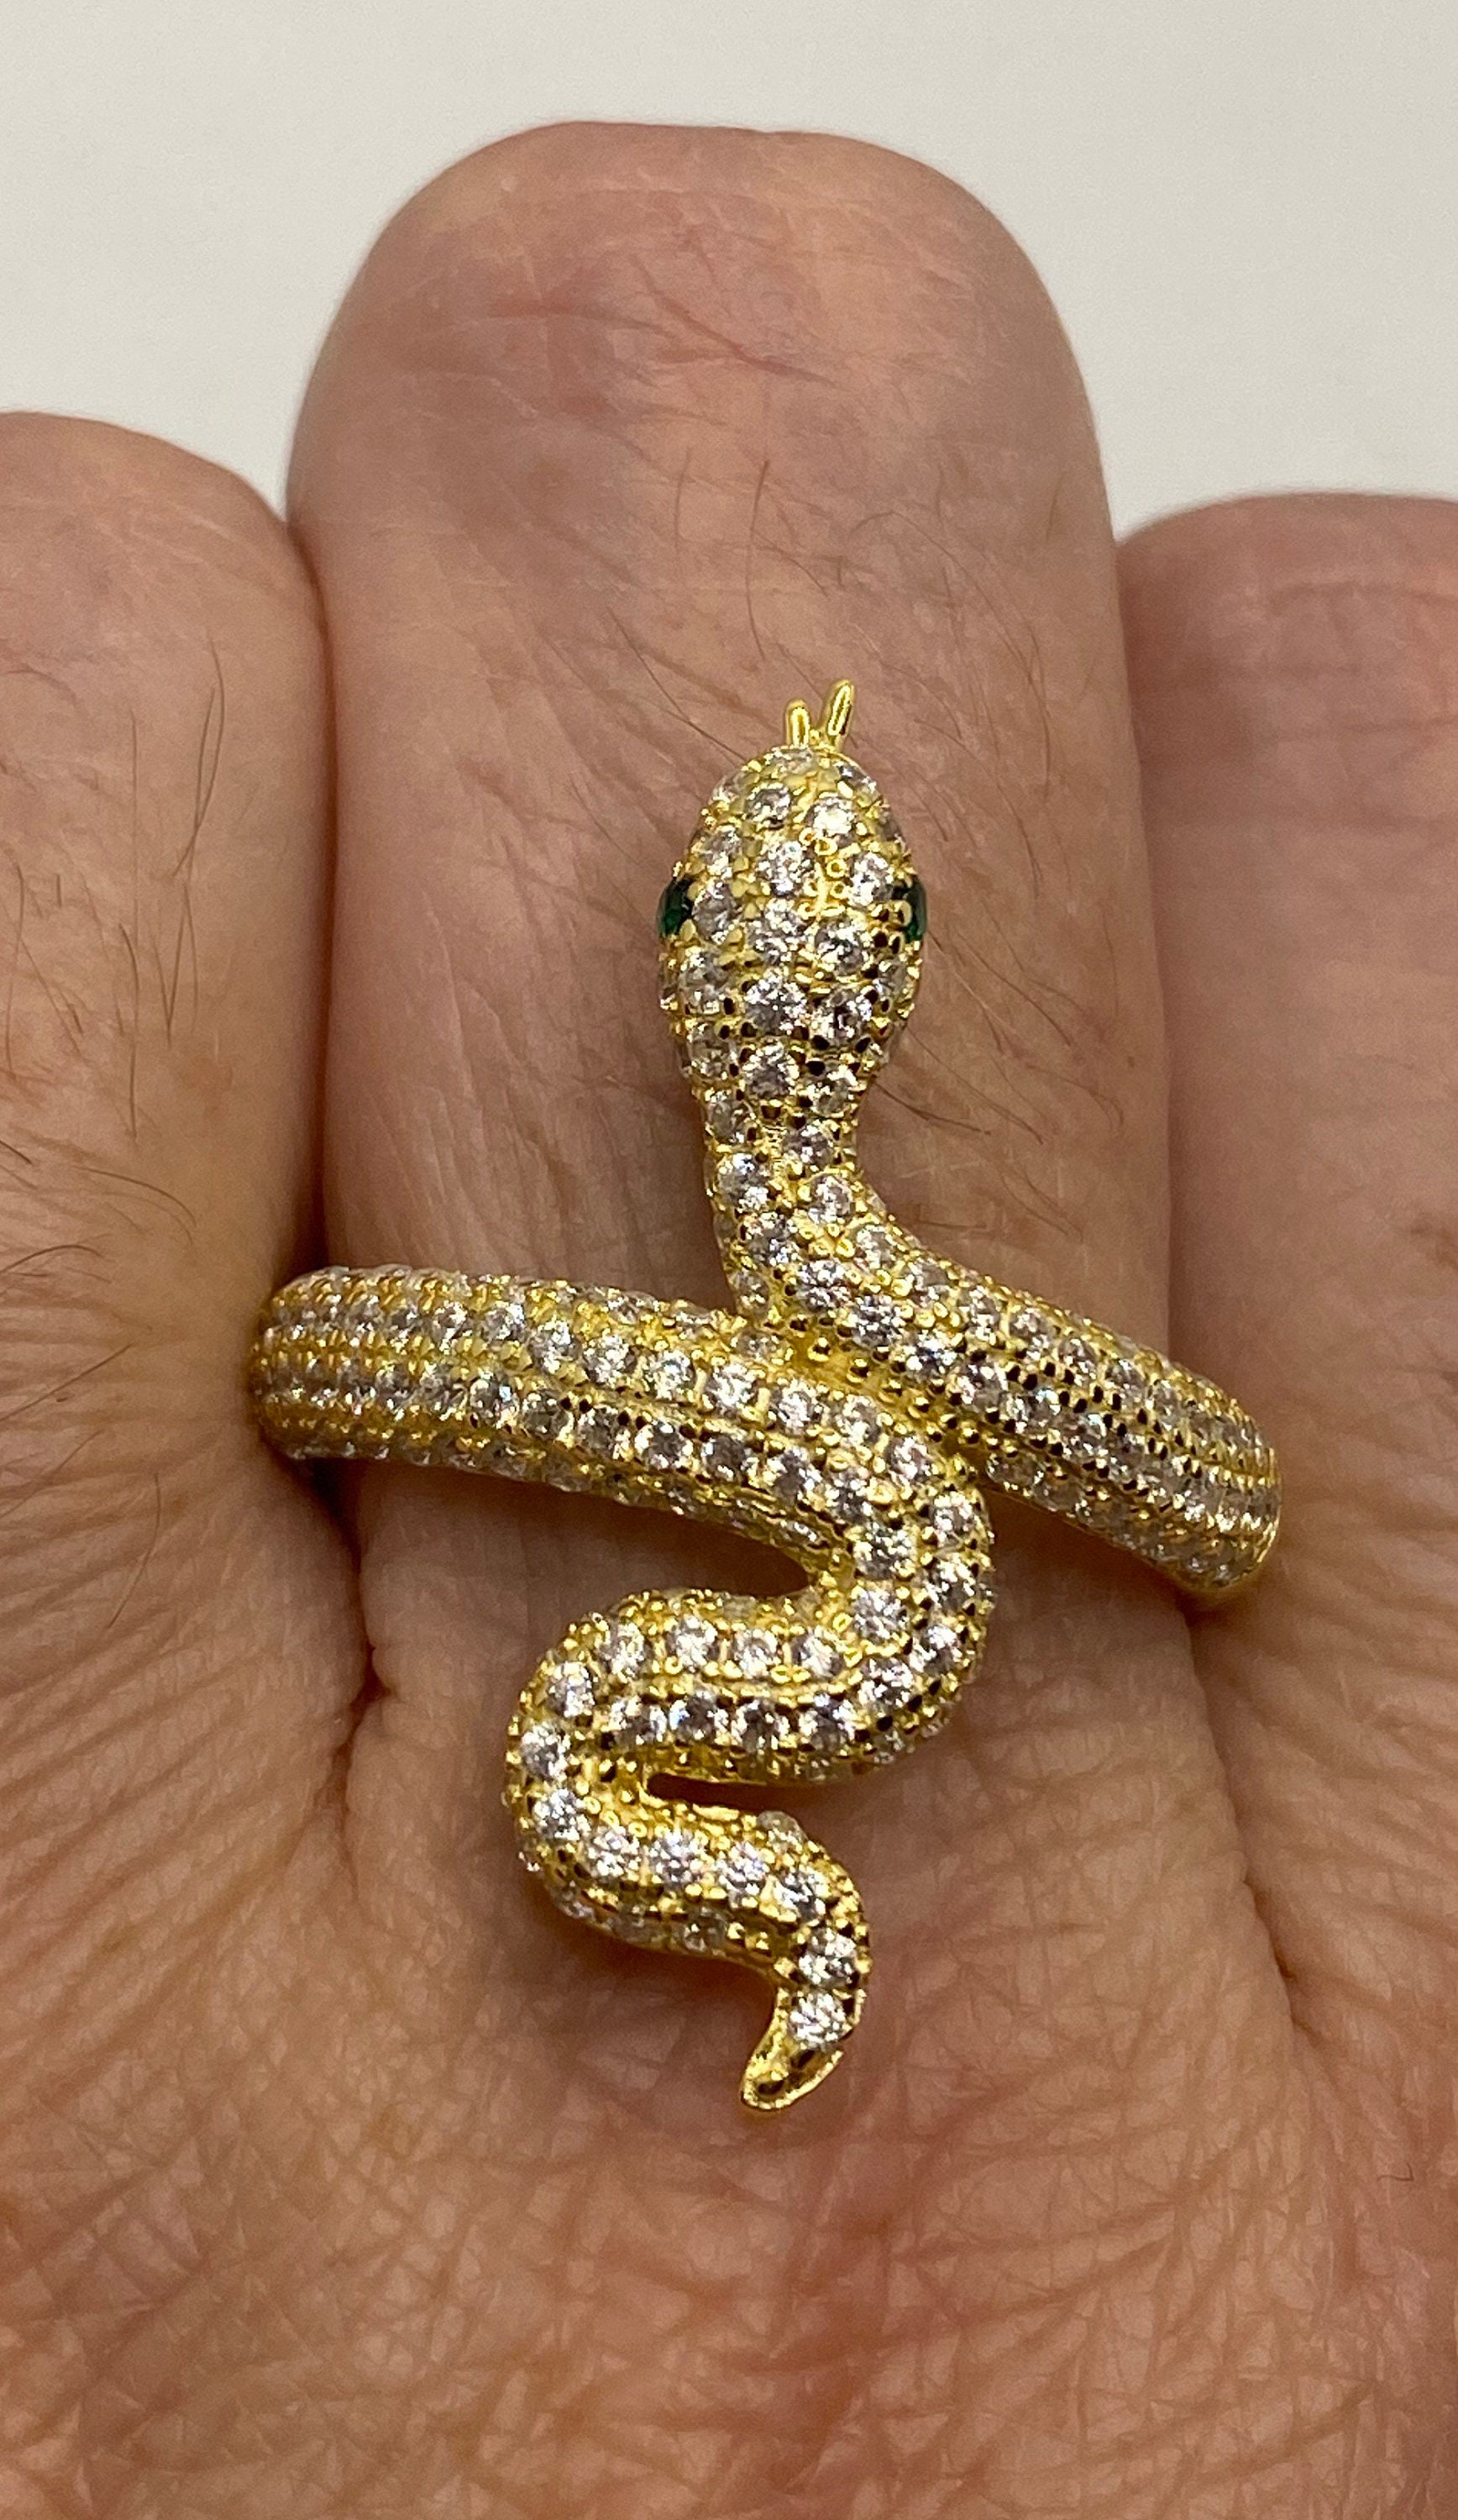 Louis Vuitton Monogram Snake Ring - Gold-Tone Metal Cocktail Ring